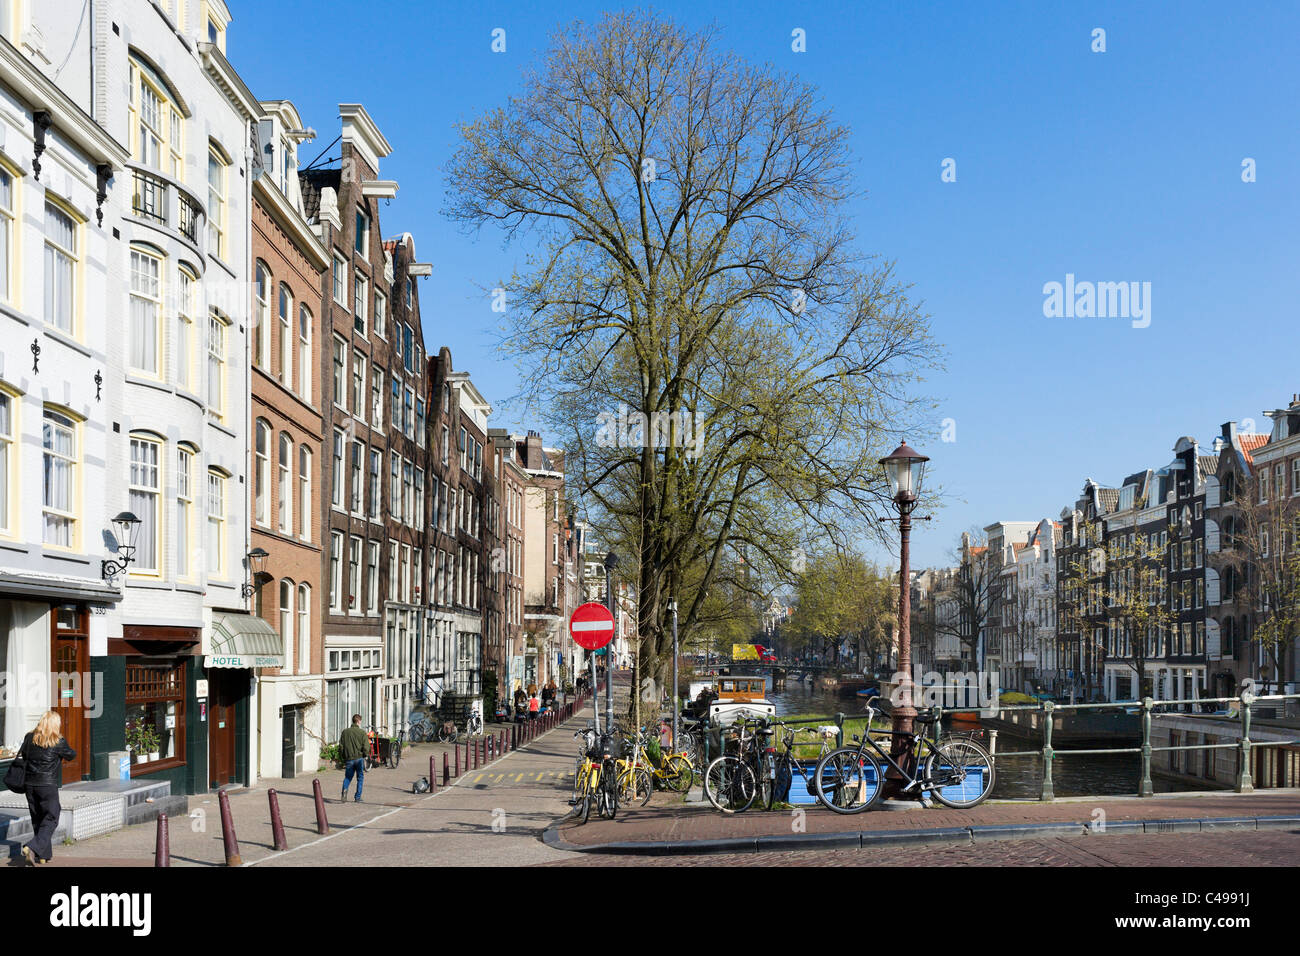 Le canal Prinsengracht, près de la jonction avec jonction avec Looiersgracht, Grachtengordel, Amsterdam, Pays-Bas Banque D'Images